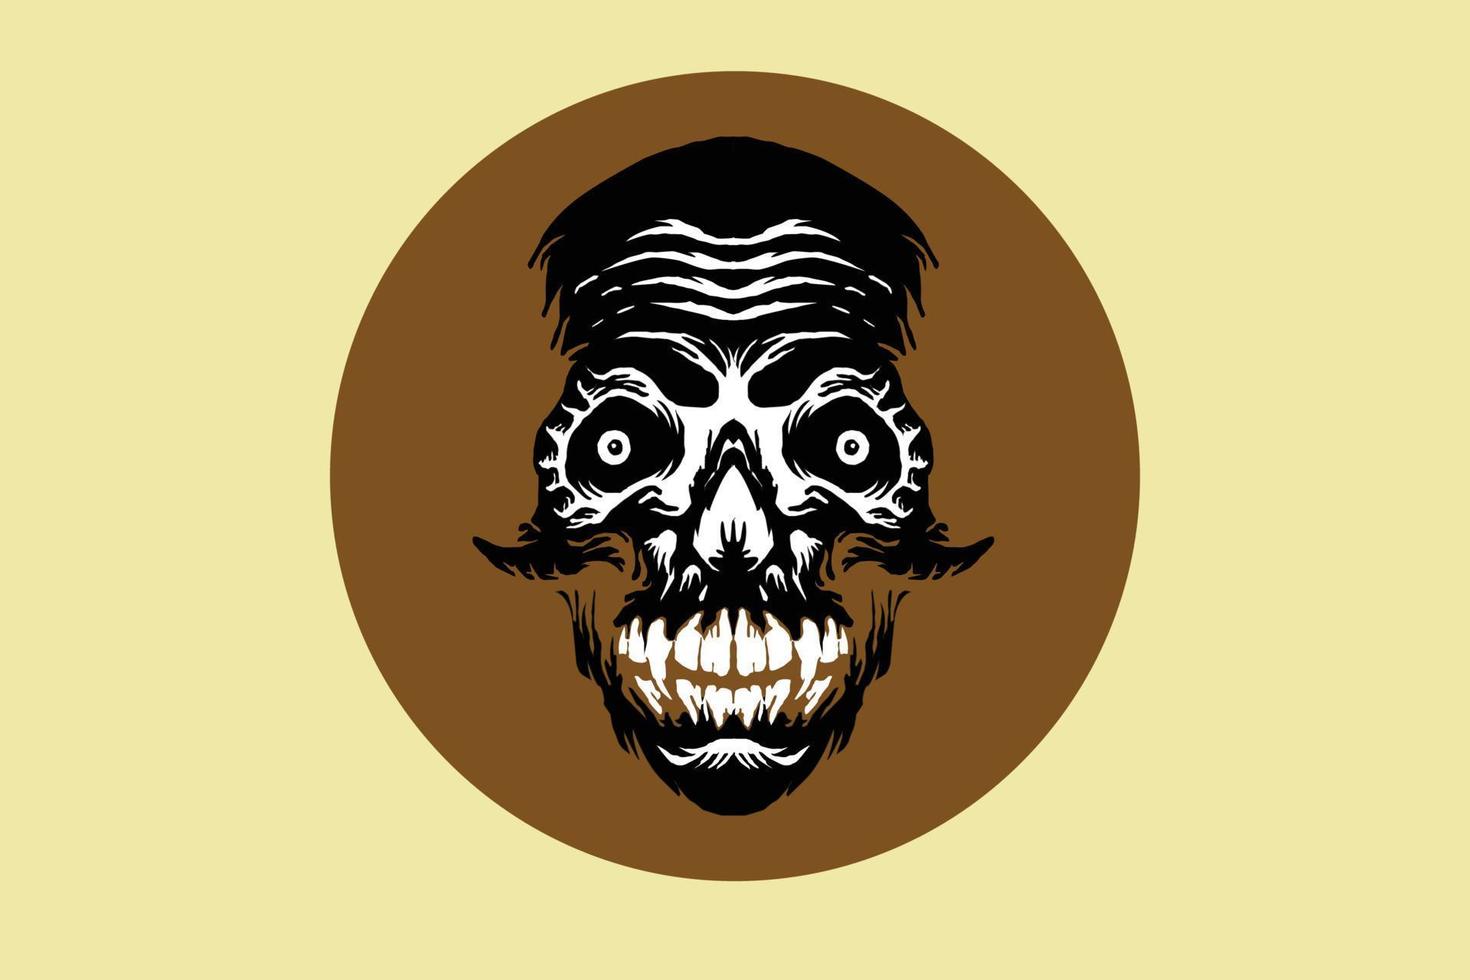 monster gorilla head skull design for t-shirt vector